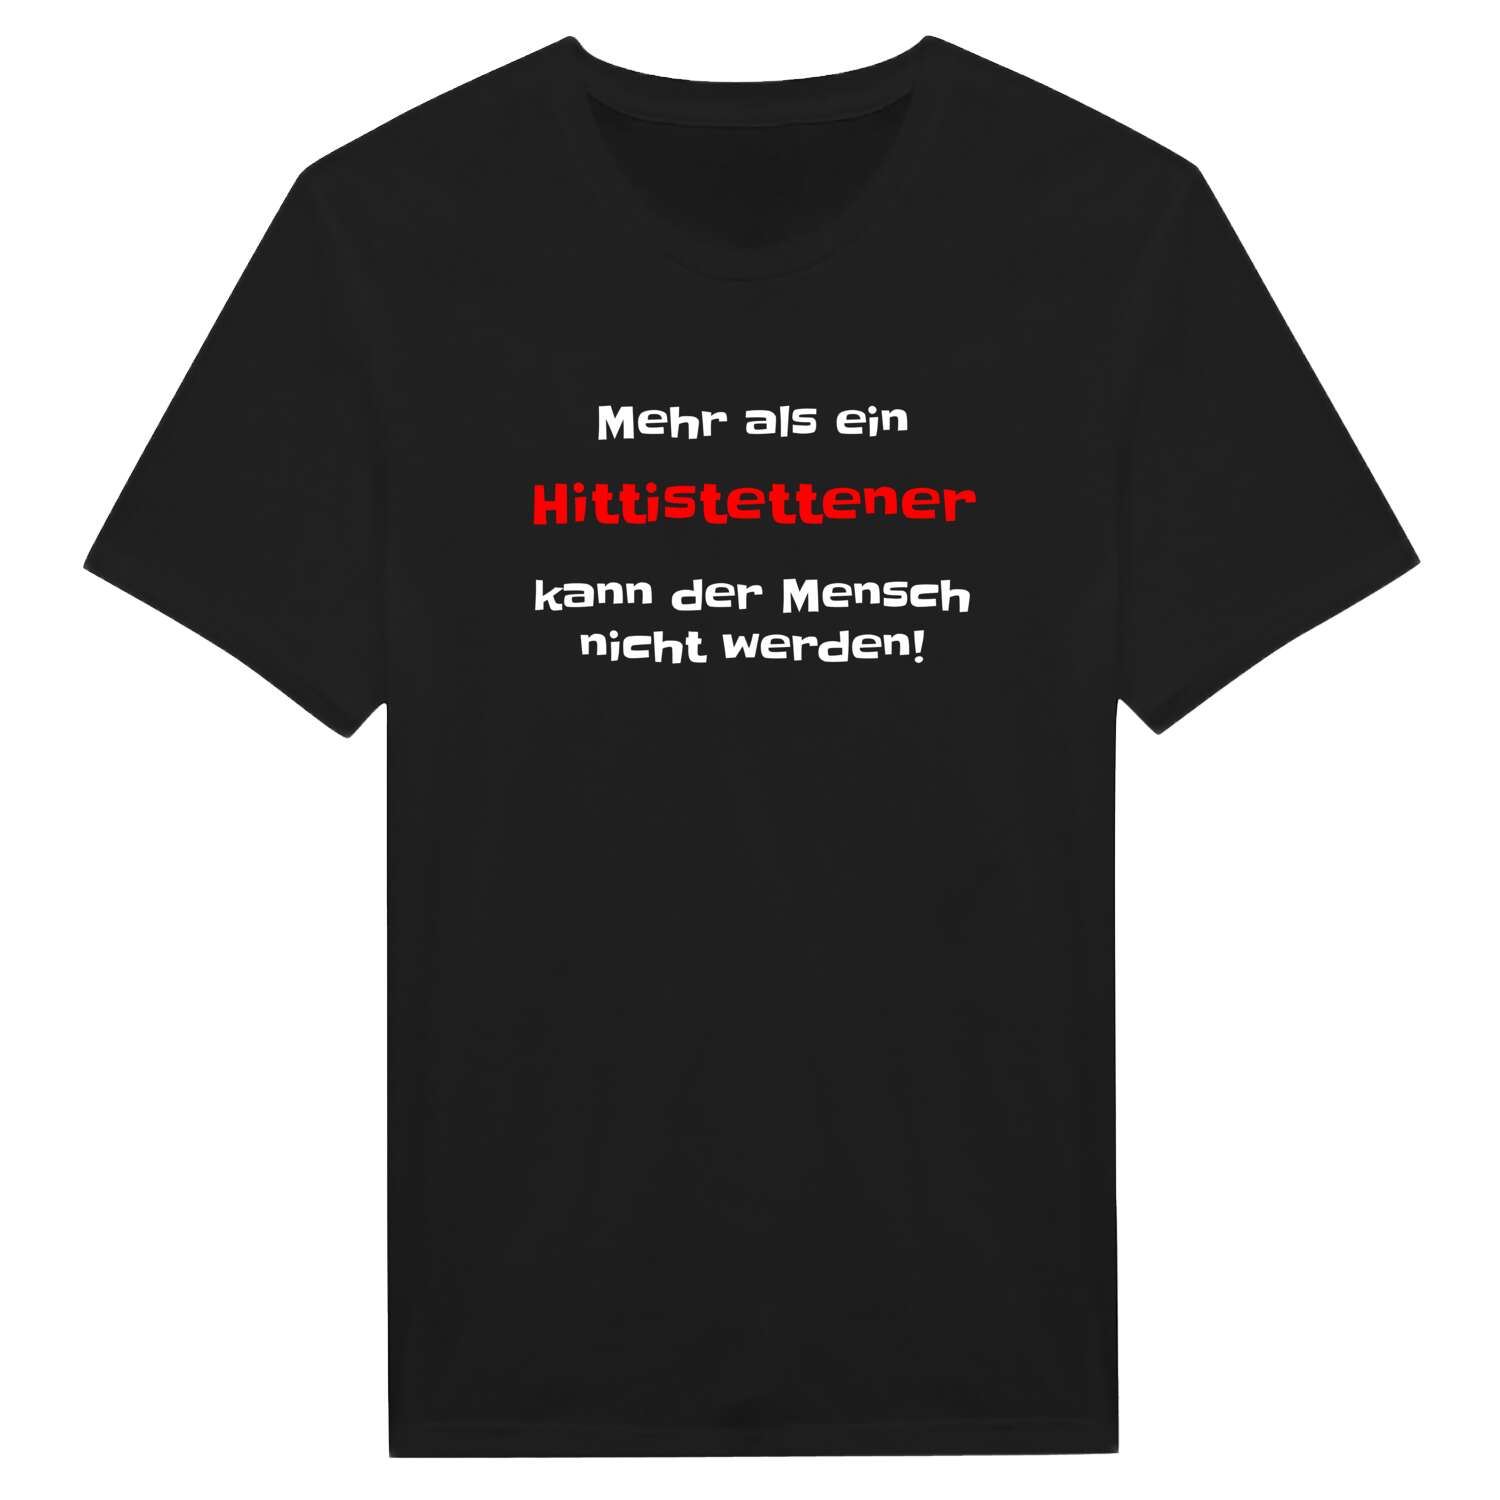 Hittistetten T-Shirt »Mehr als ein«